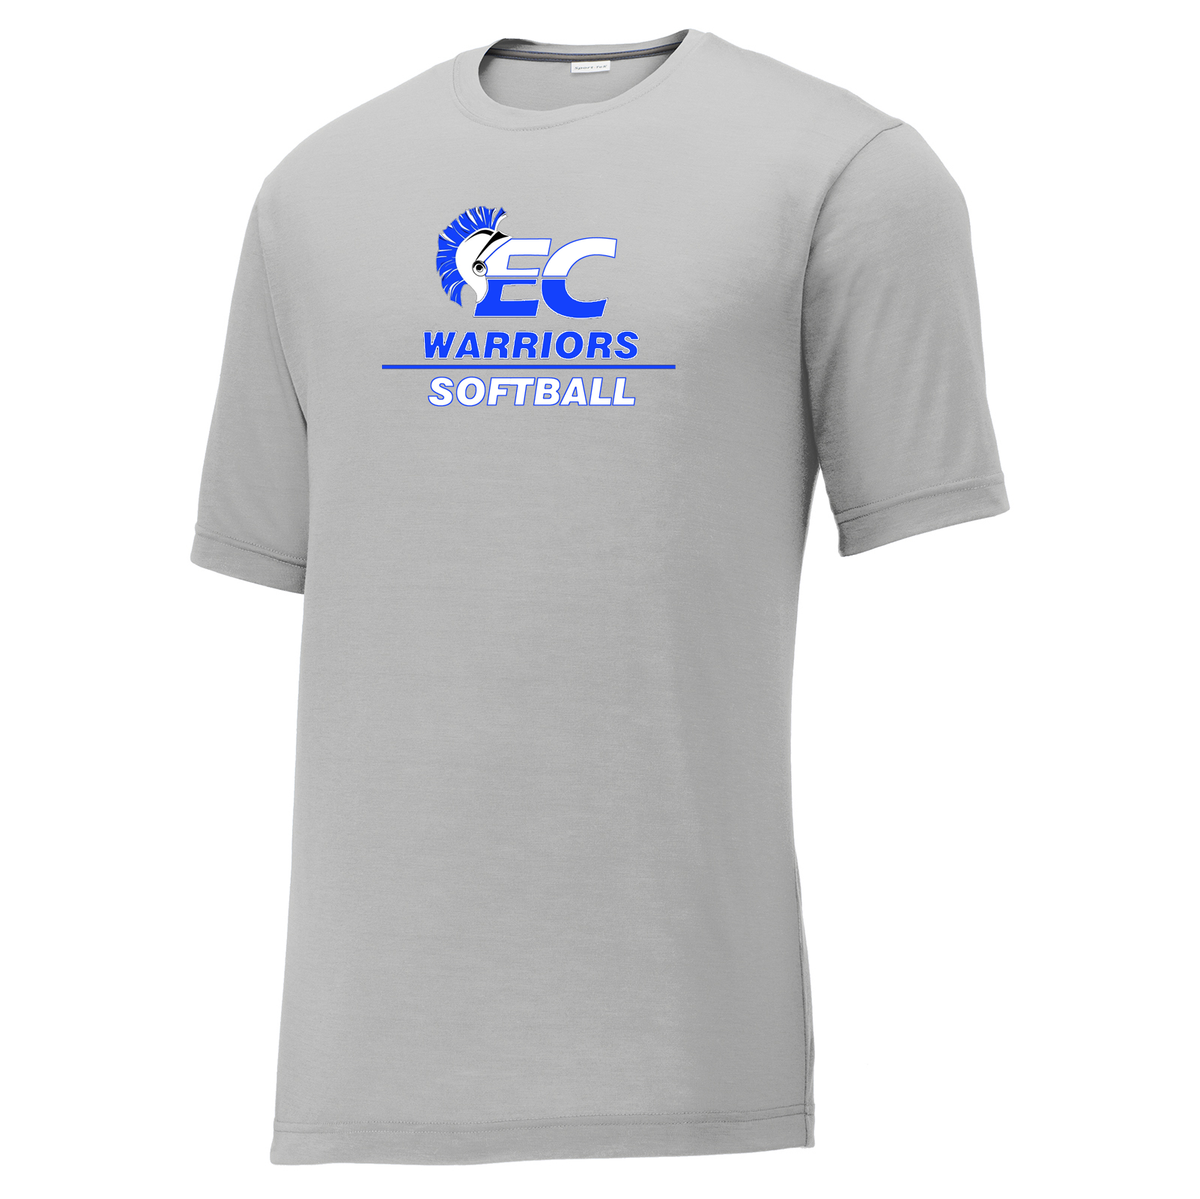 Warriors Softball CottonTouch Performance T-Shirt